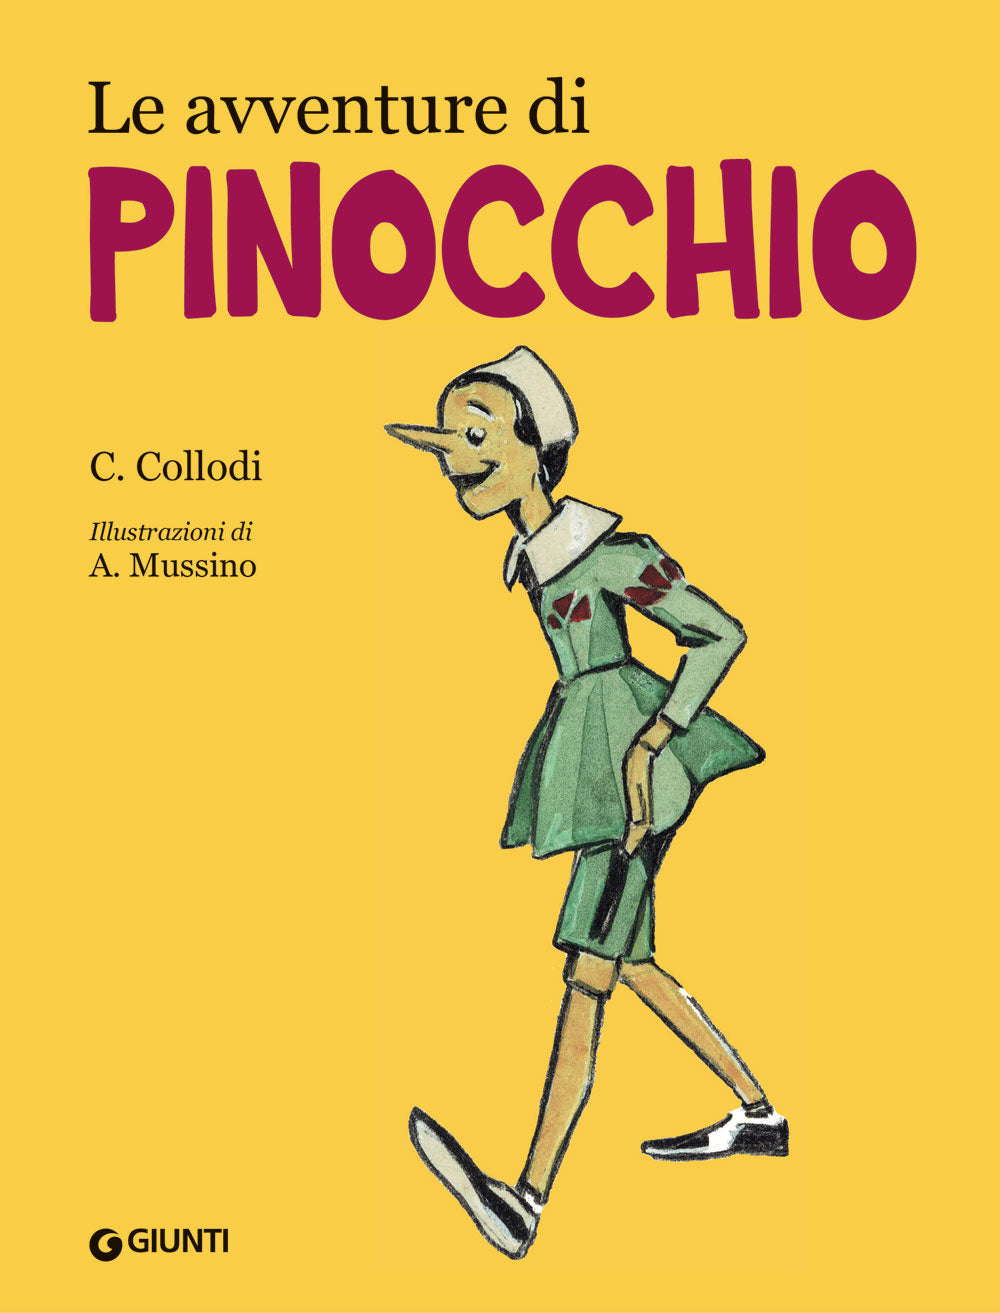 Le avventure di Pinocchio (ill. Mussino), Carlo Collodi